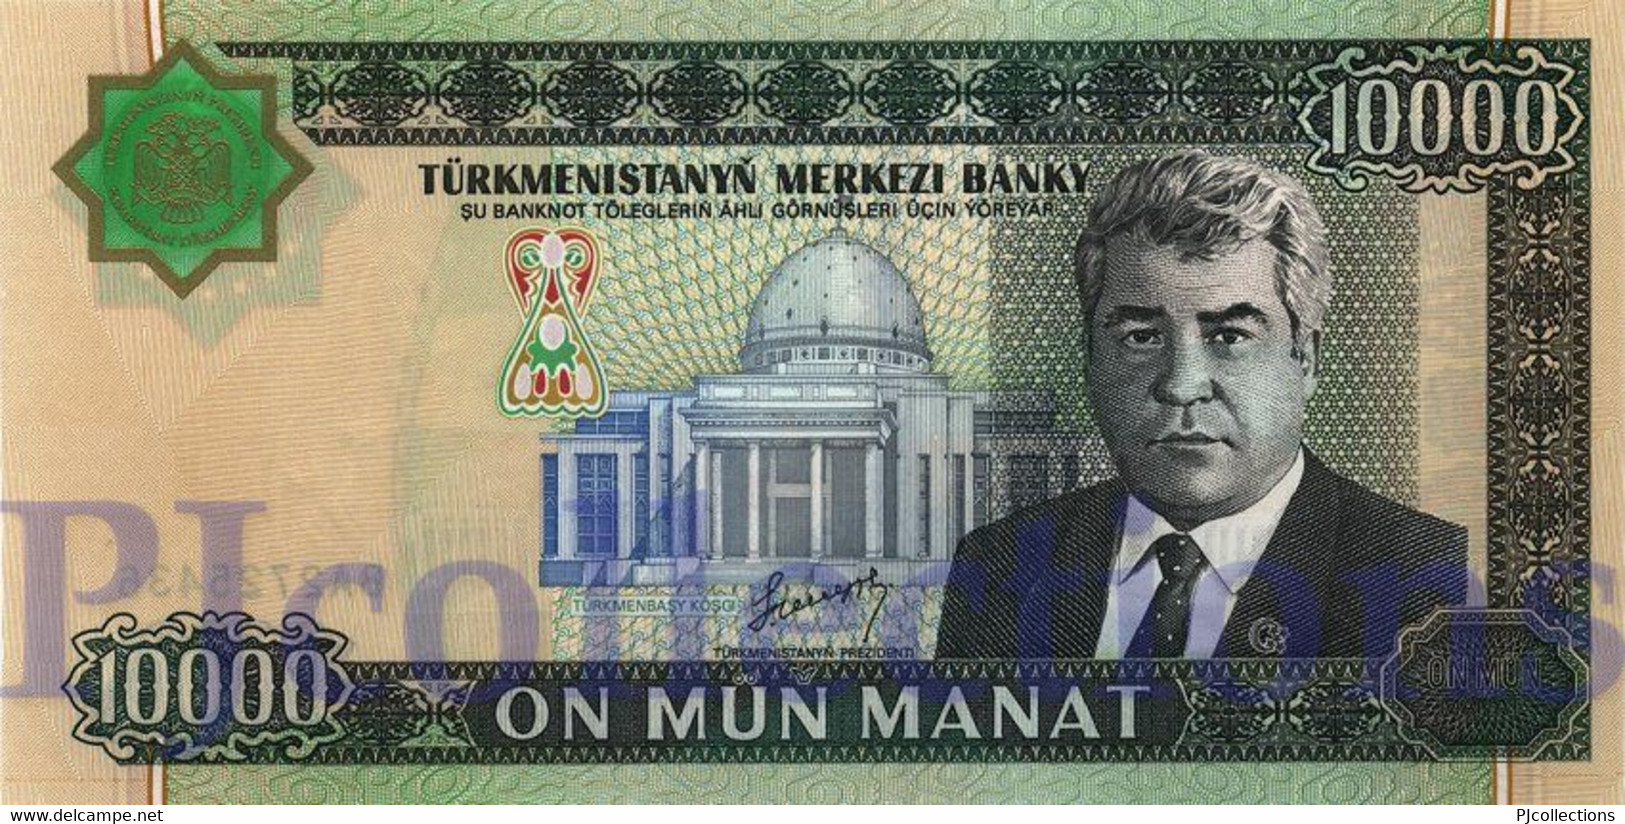 TURKMENISTAN 10000 MANAT 2003 PICK 15 UNC - Turkmenistan